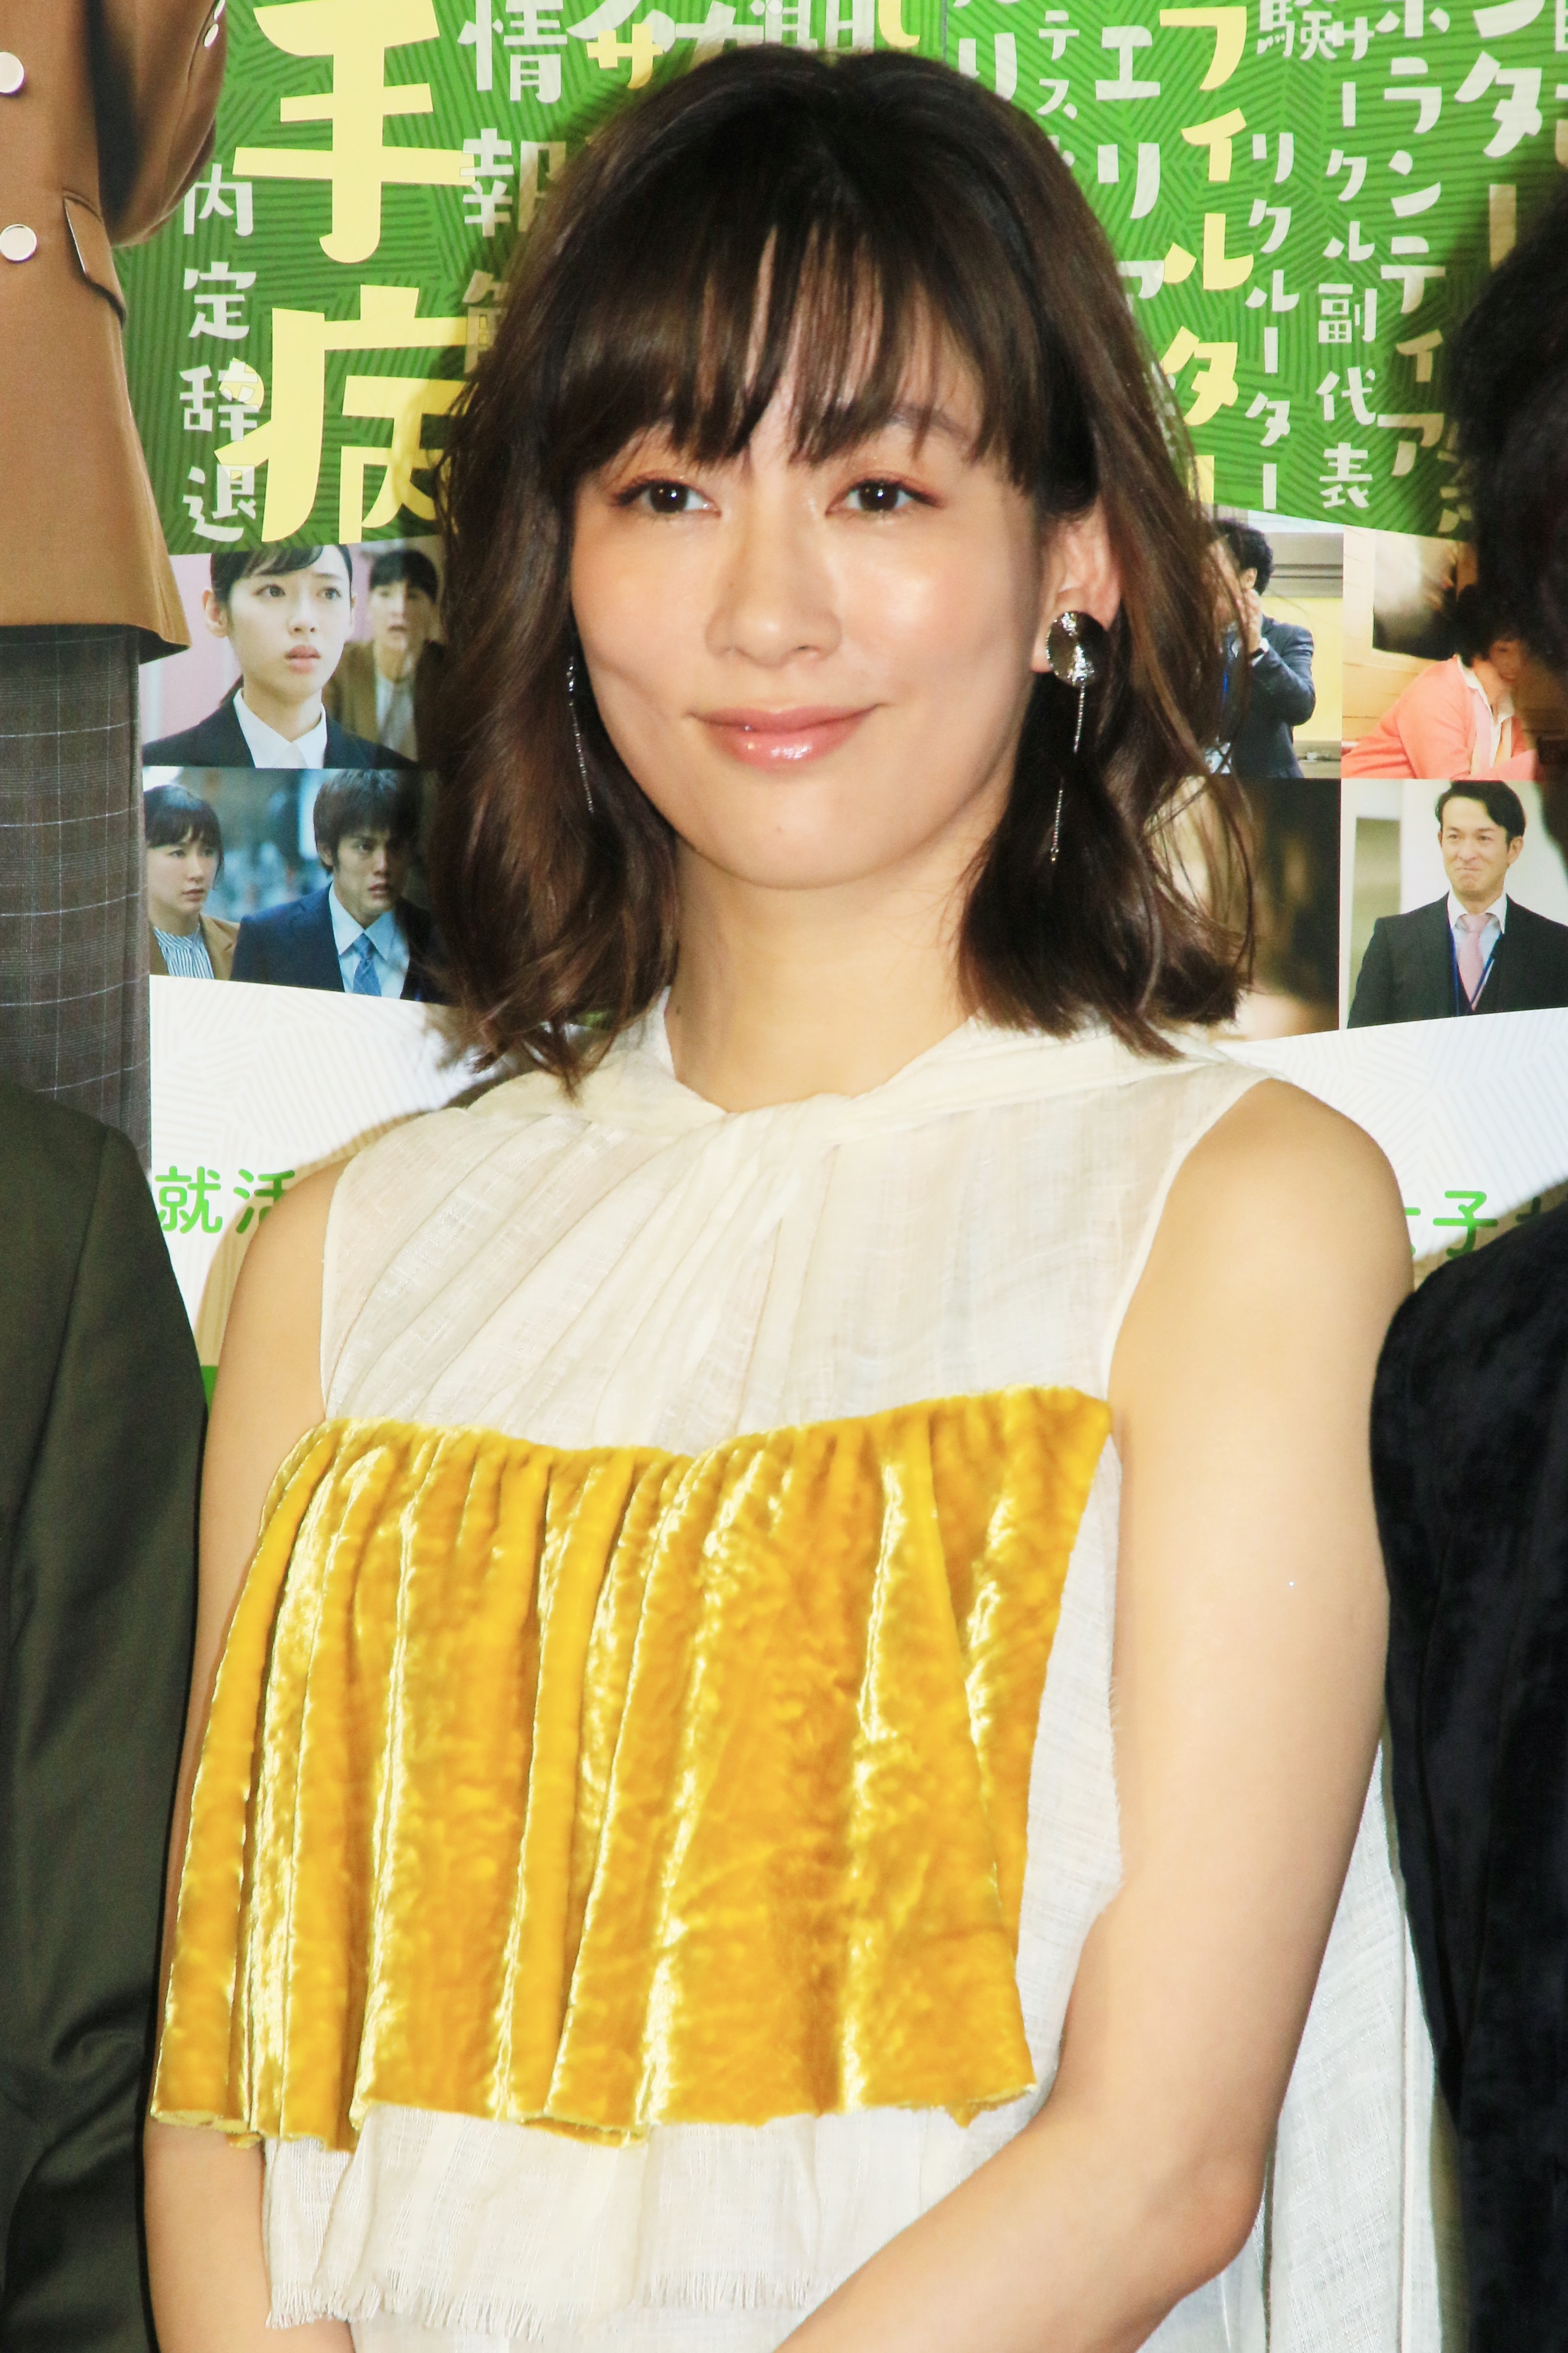 水川あさみ 新婚ですみませんと頭を下げた 結婚後の初仕事で 婚活女子 役に挑戦 Daily News Billboard Japan